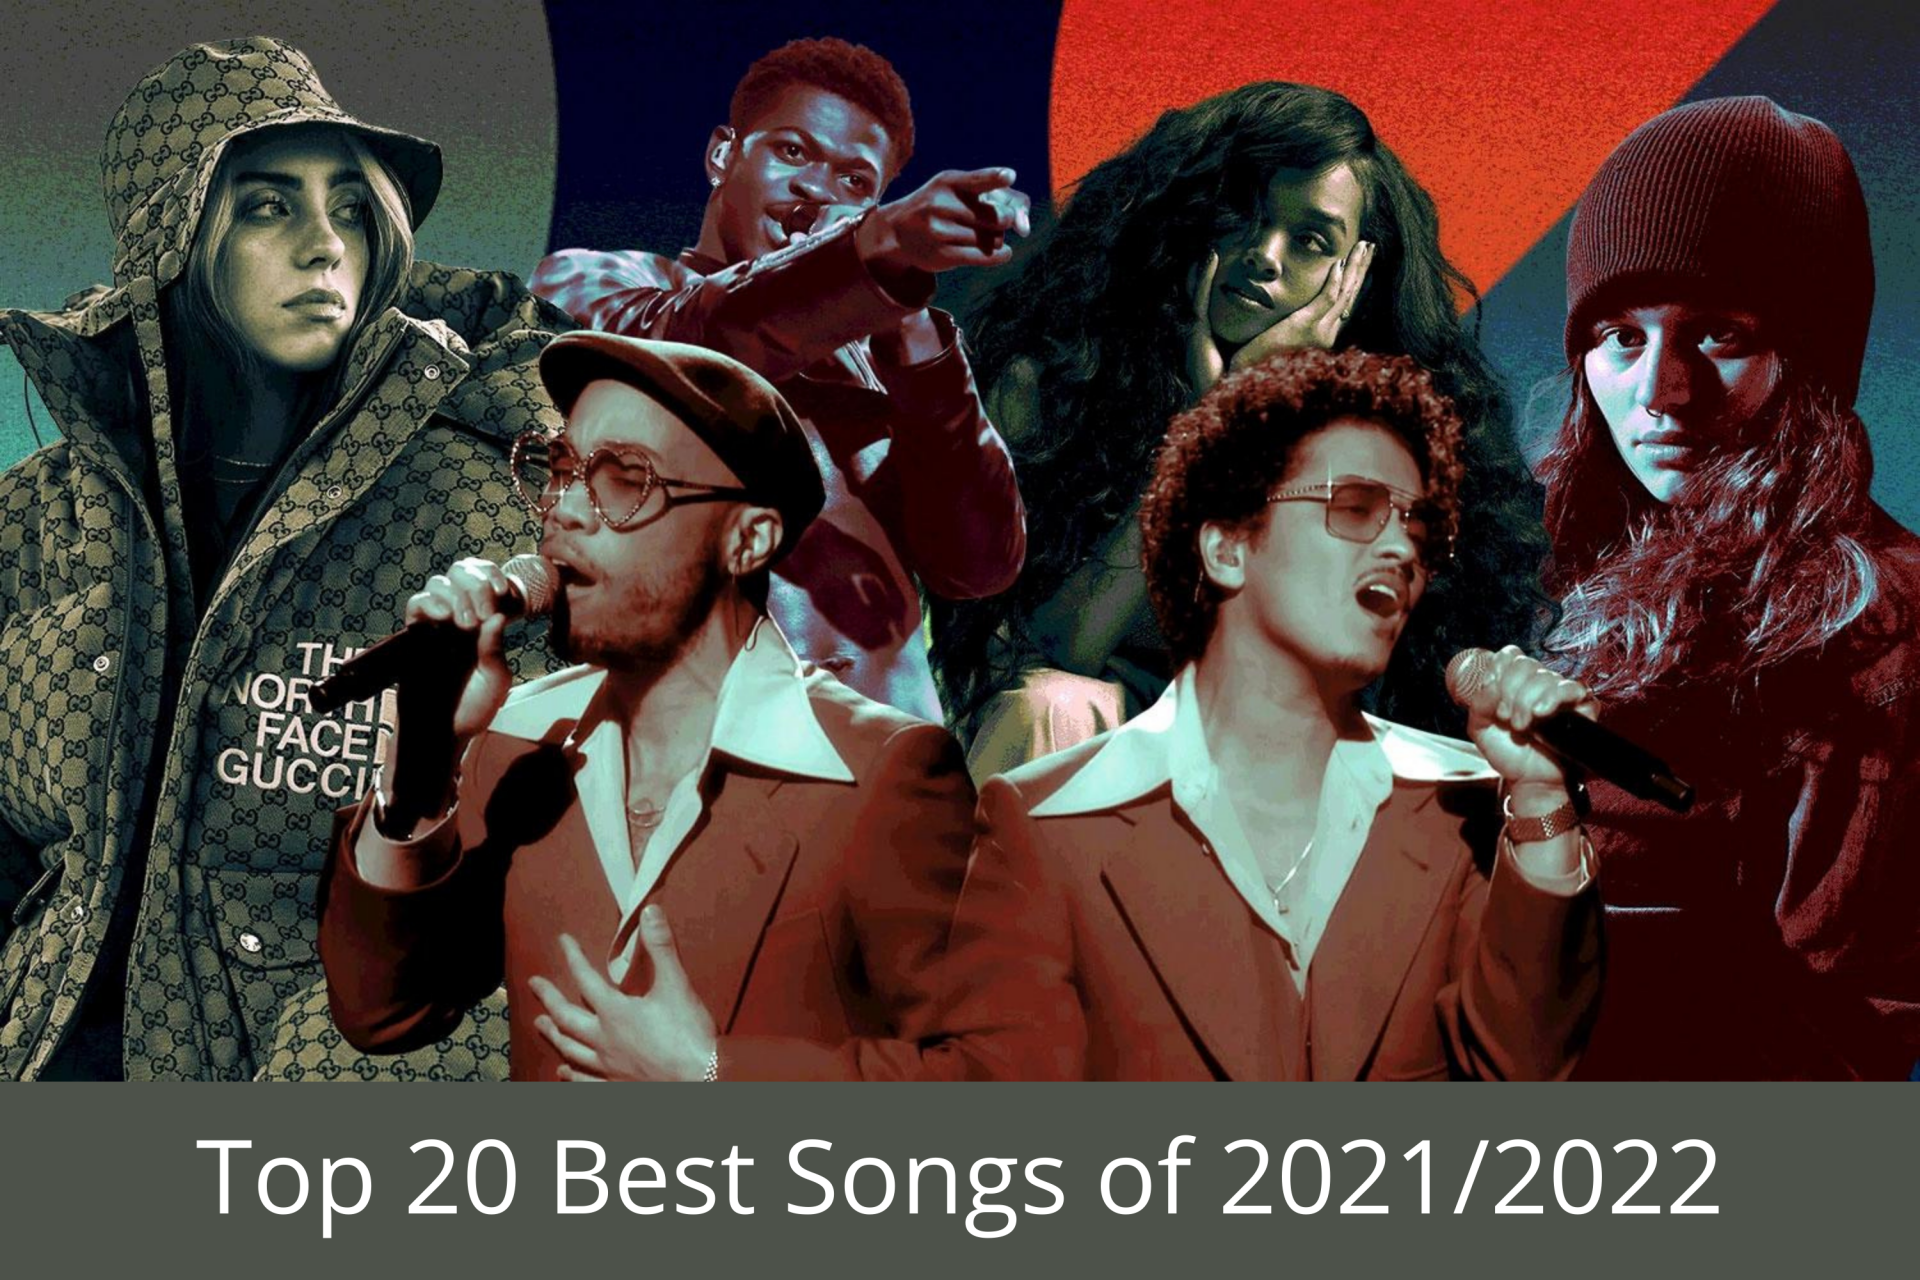 Top 20 Best Songs of 2021/2022